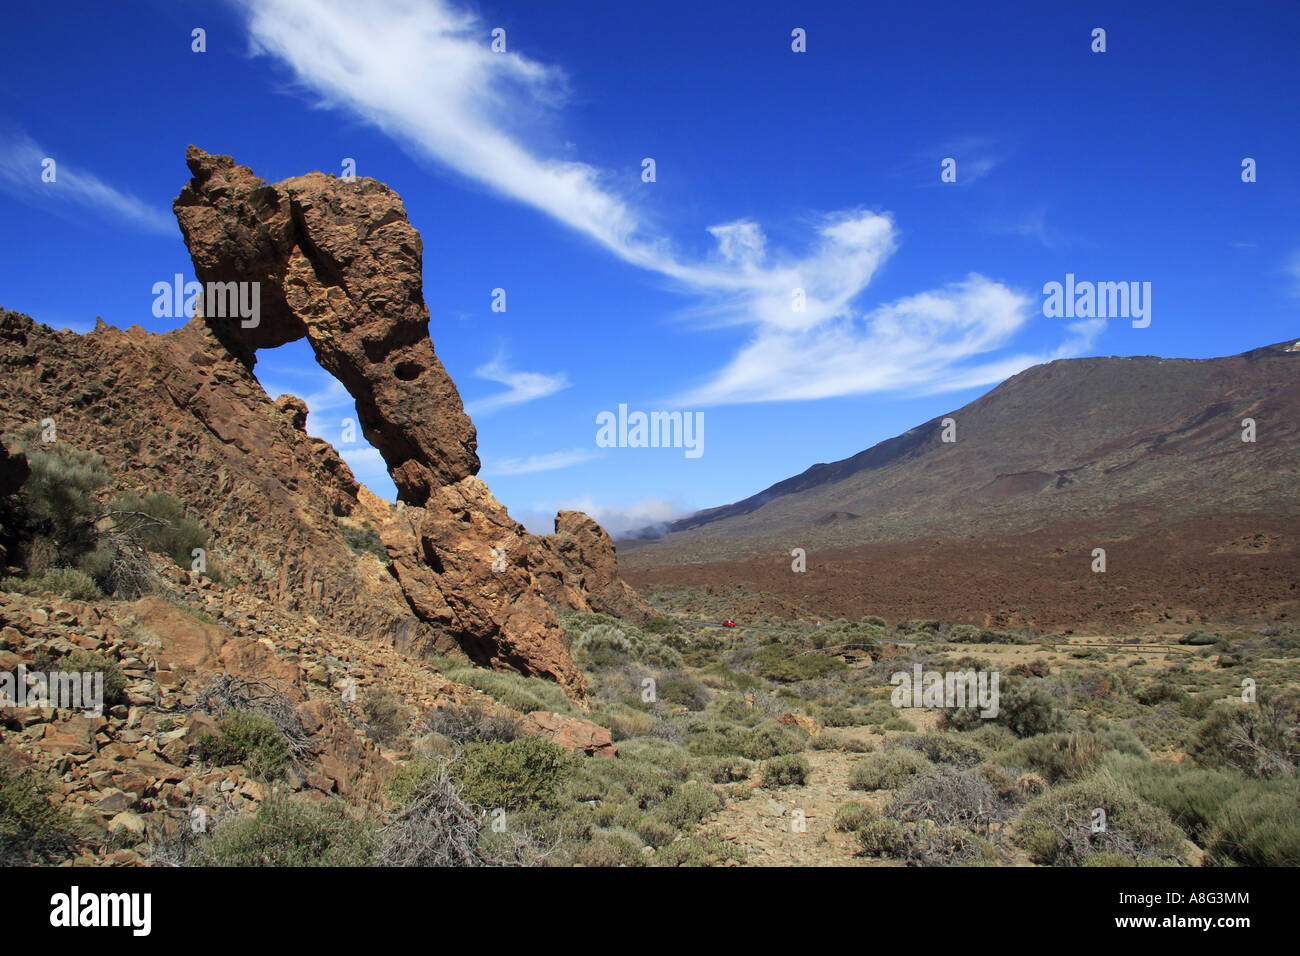 La Queens Slipper Zapatilla de La Reina Affleurement de roches sculptées par le vent Parc national de Las Canadas Tenerife Espagne Banque D'Images